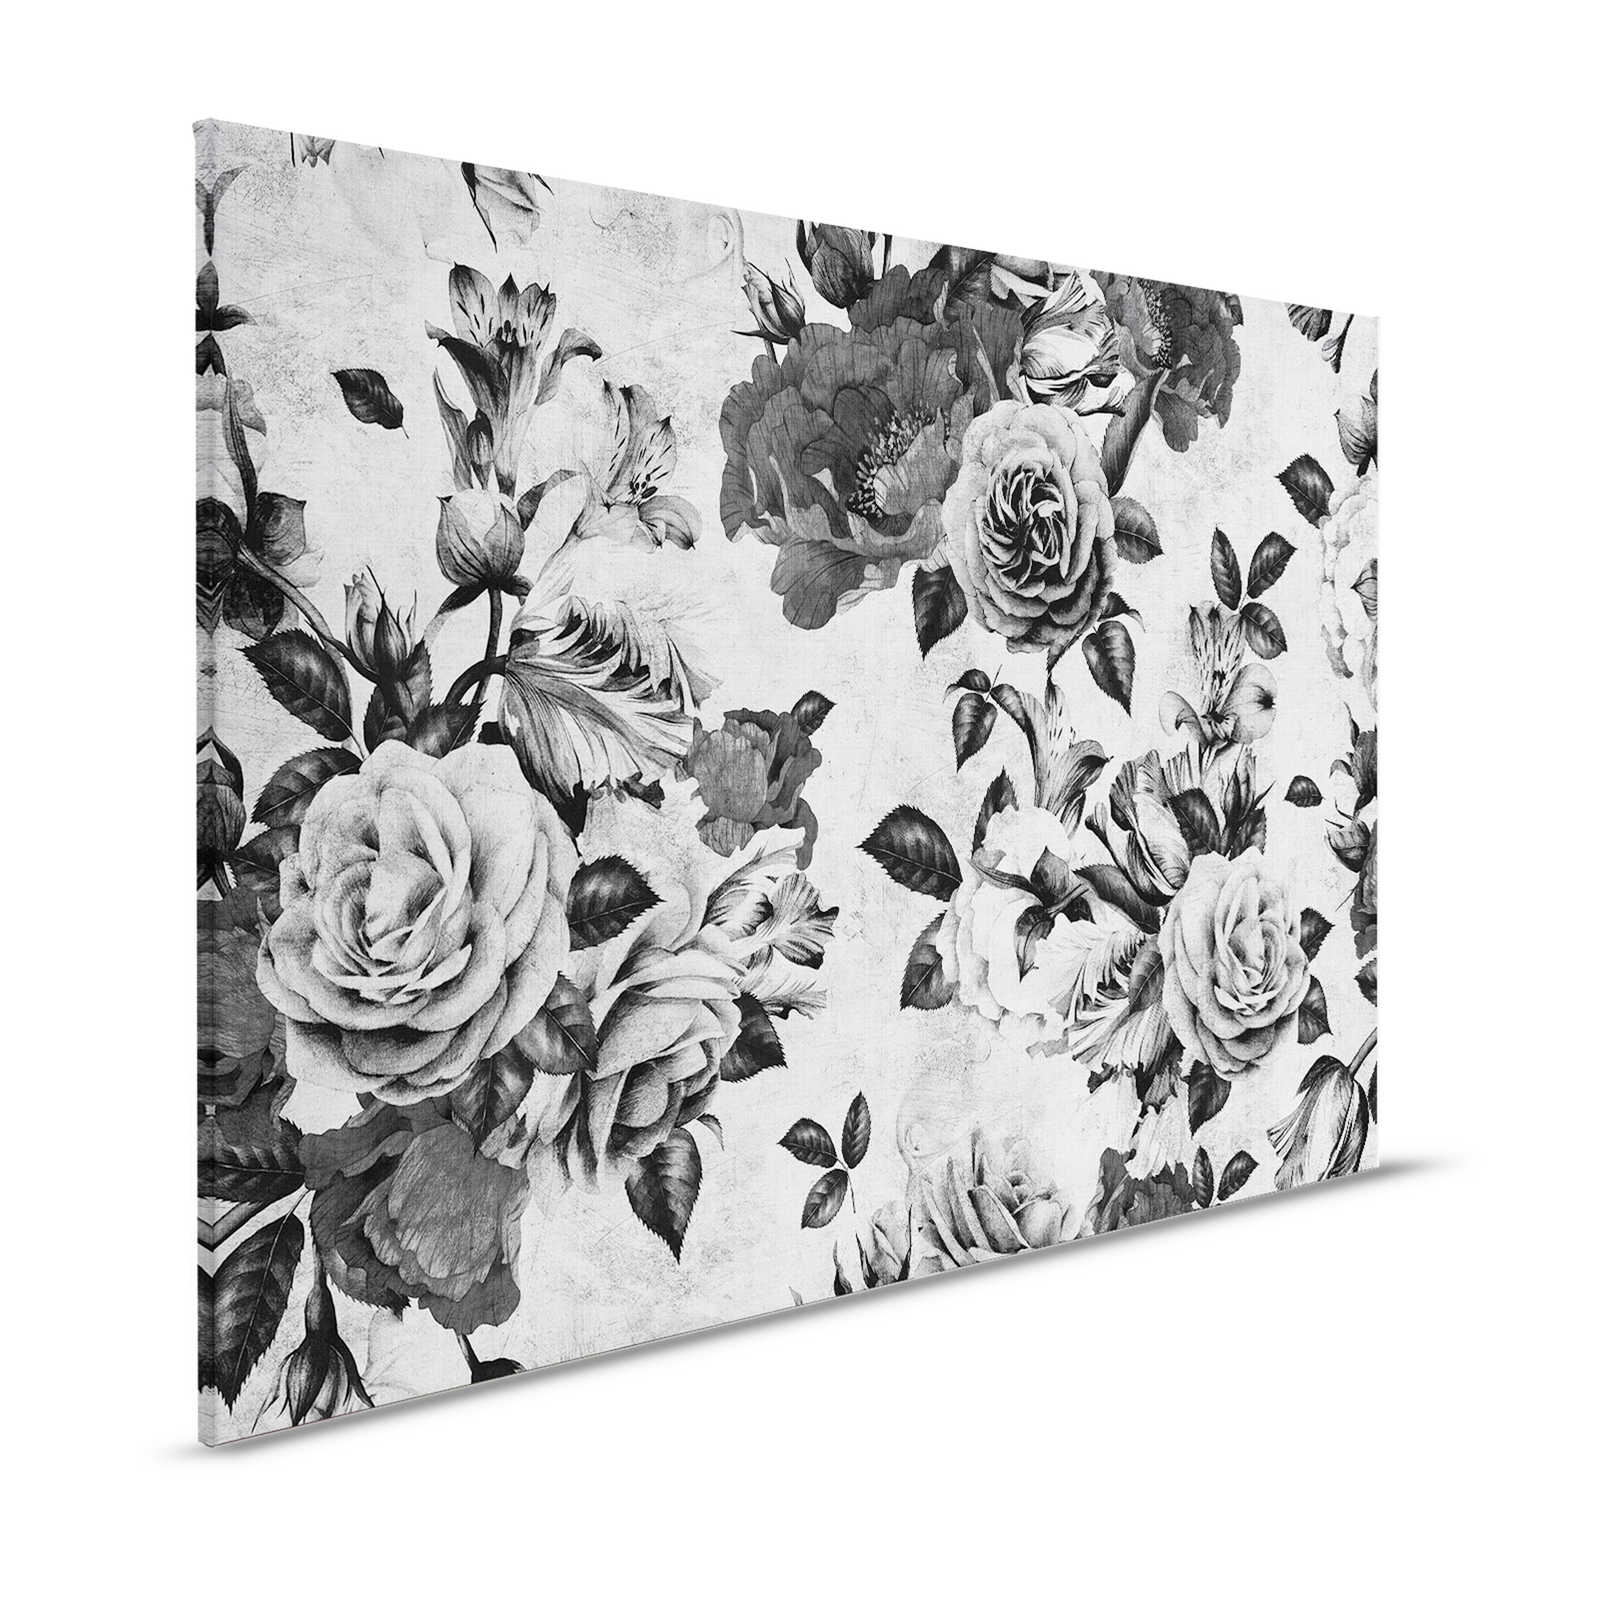 Spaanse roos 1 - Rozen canvas schilderij met zwarte en witte bloemen - 1,20 m x 0,80 m
